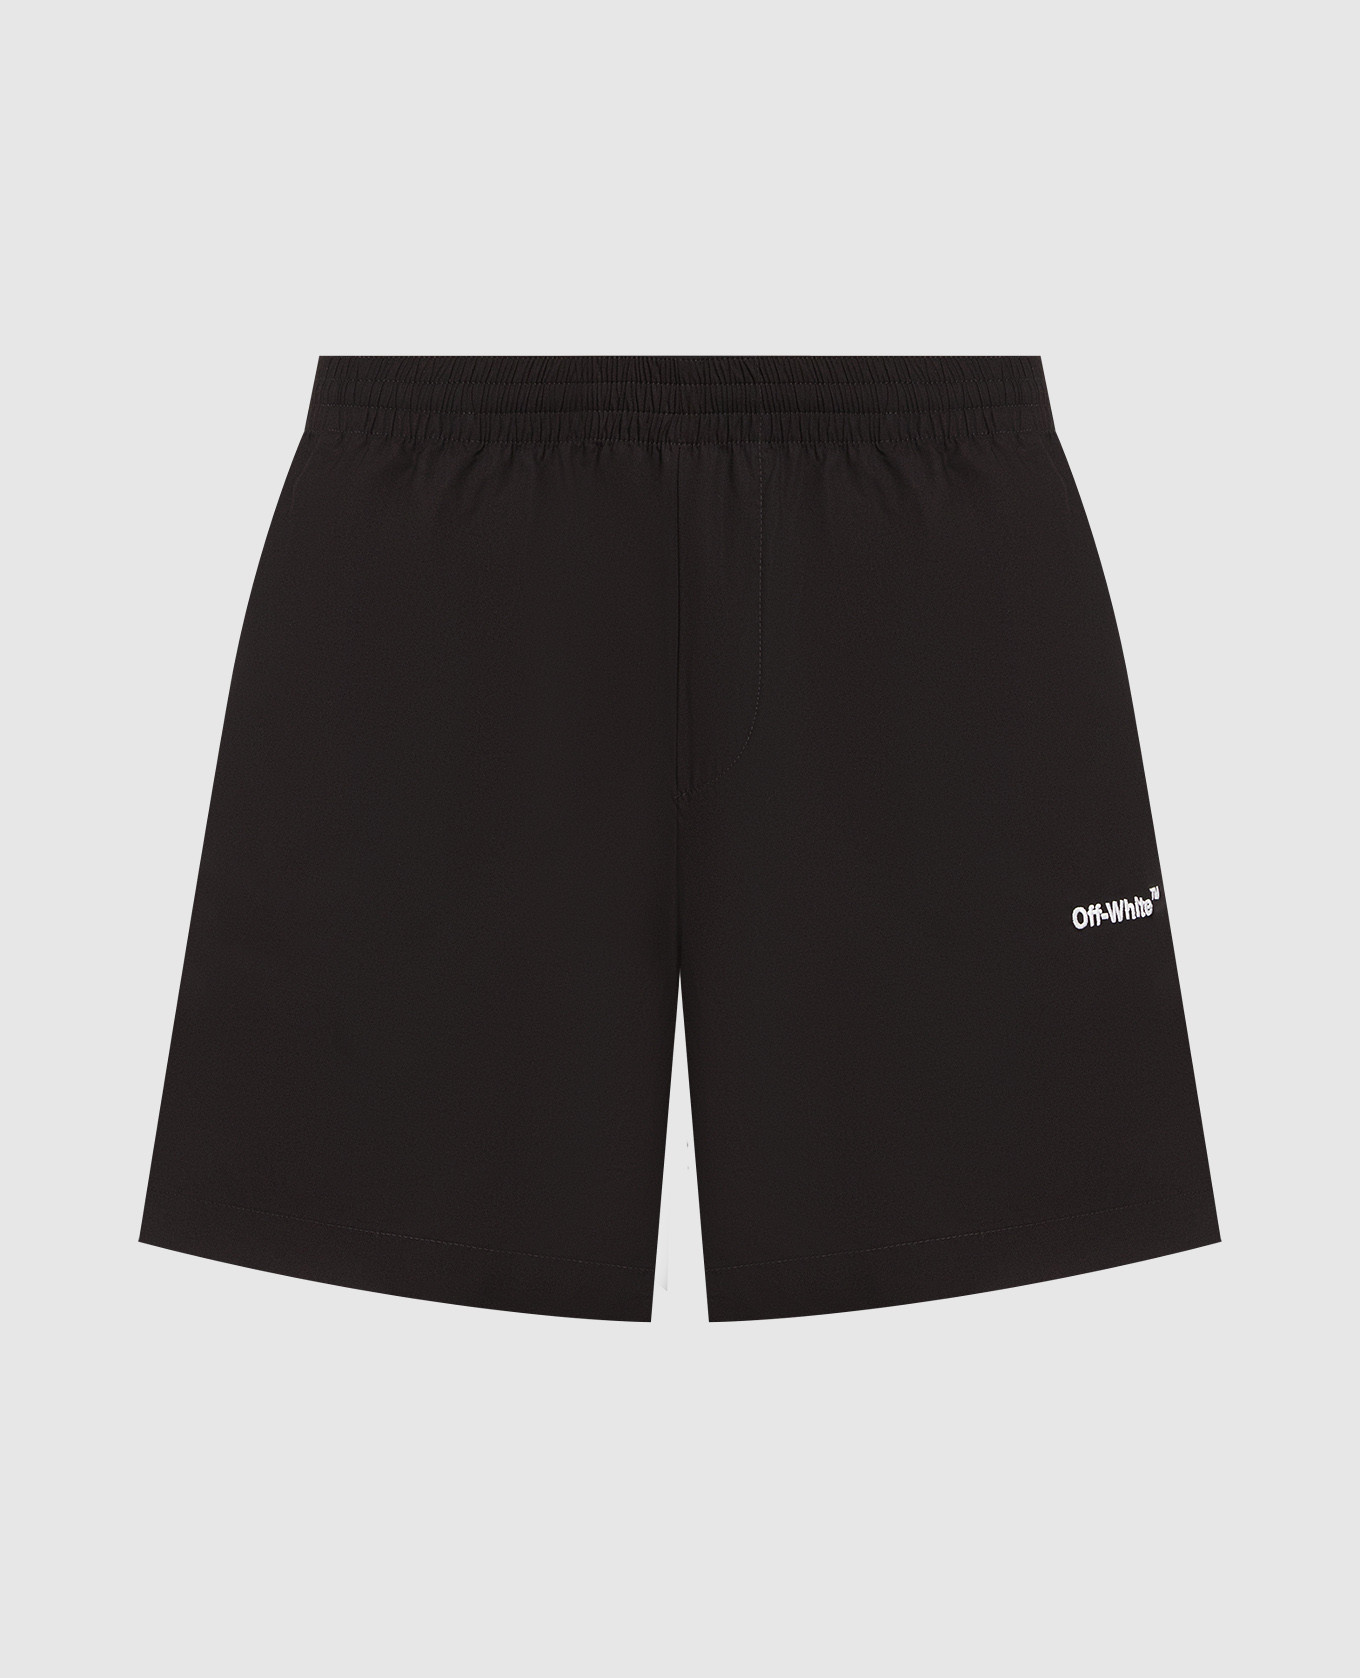 Black shorts with logo